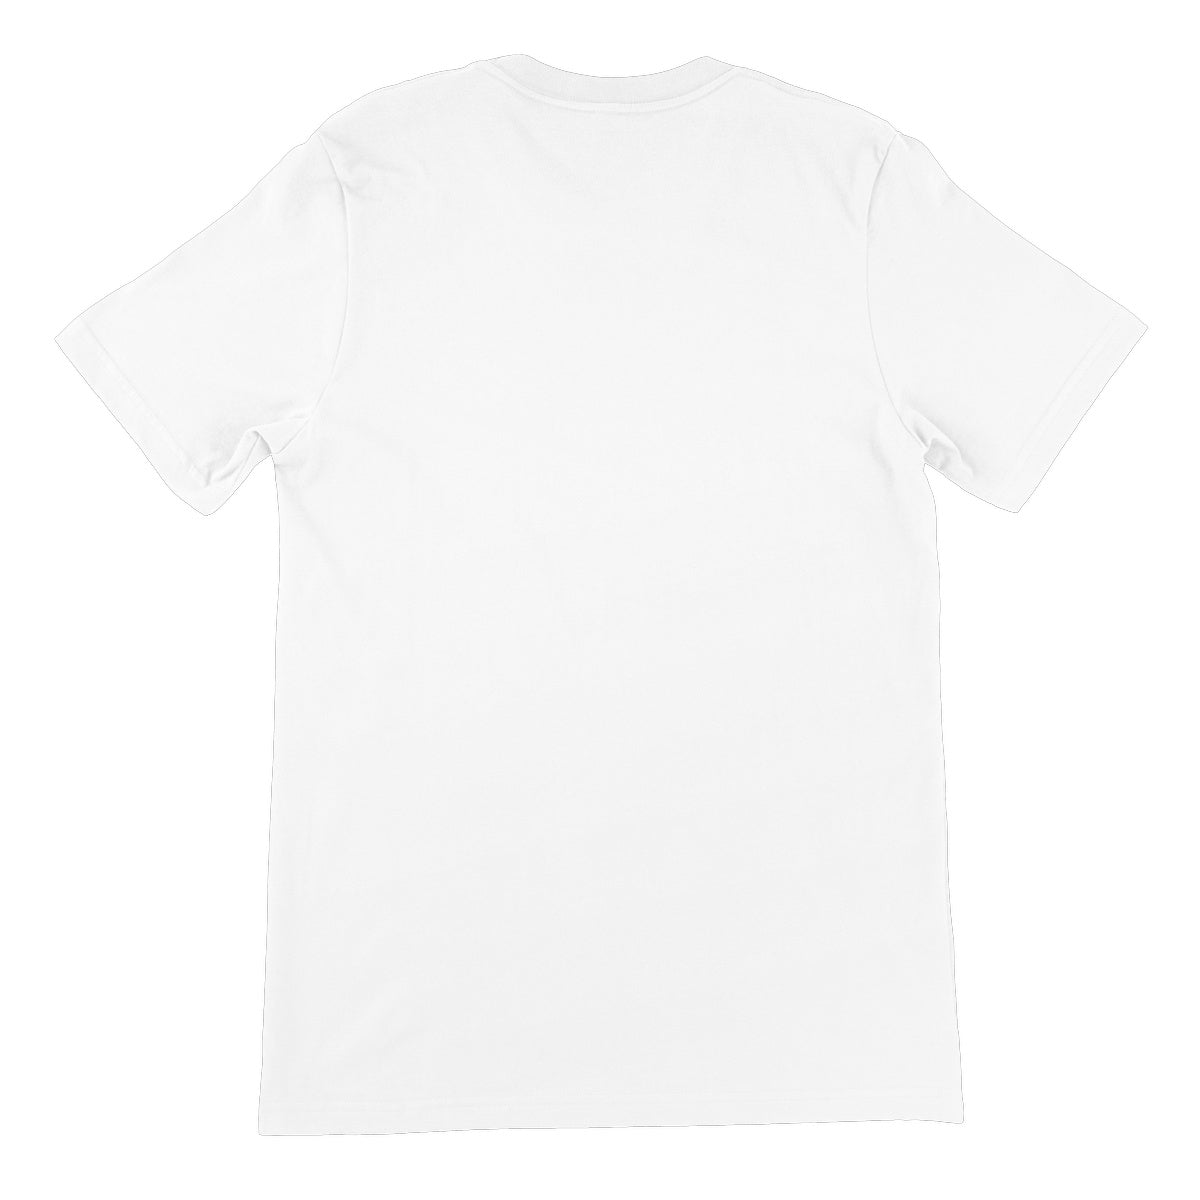 Kuen's Surface, Mesh Unisex Short Sleeve T-Shirt